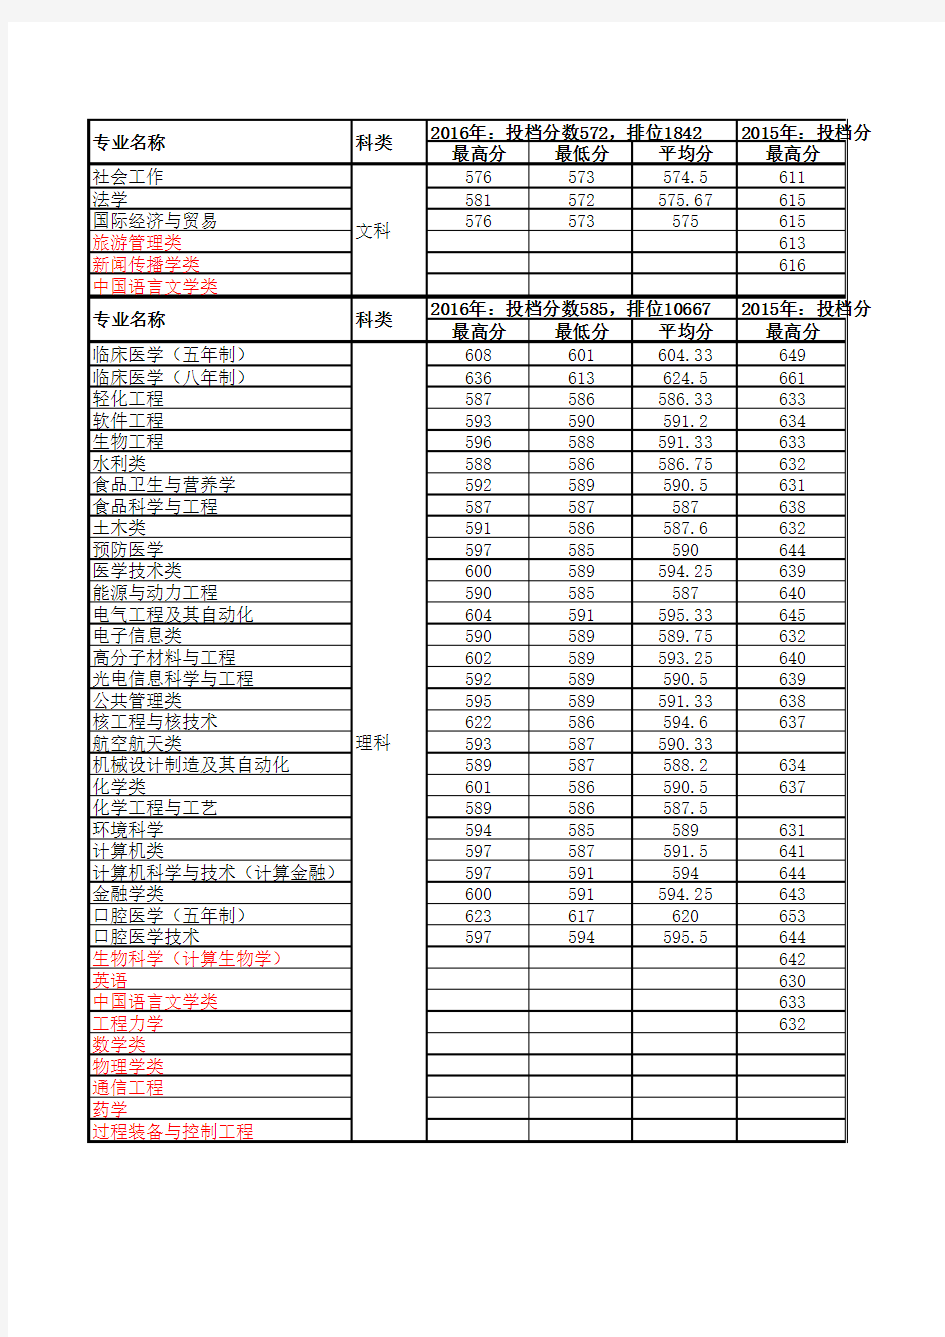 四川大学2014-2016年专业录取情况